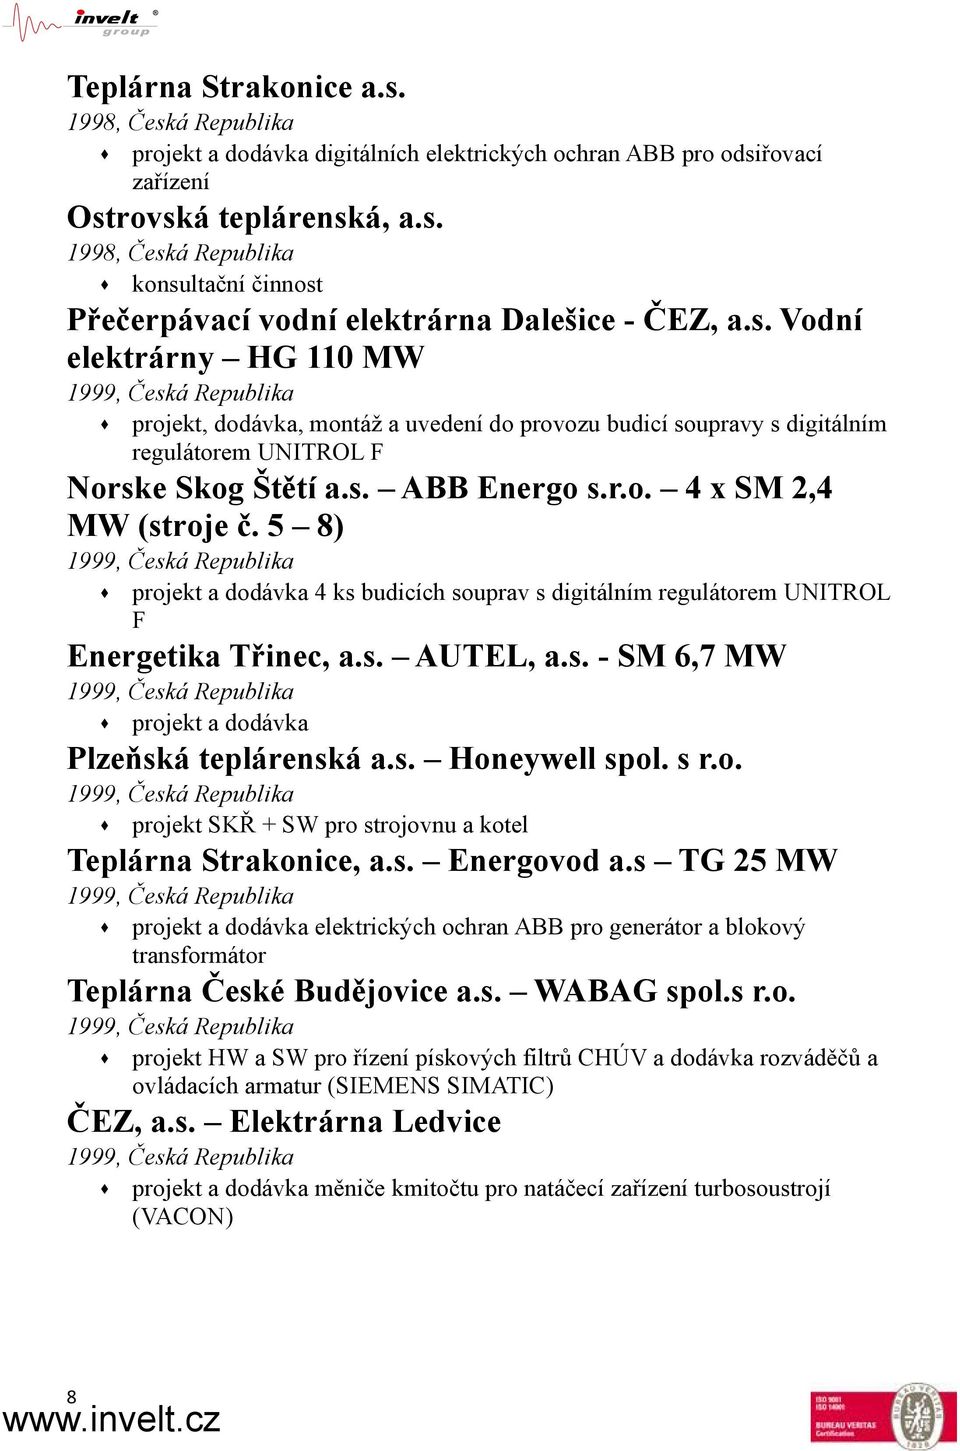 5 8) 1999, Česká Republika projekt a dodávka 4 ks budicích souprav s digitálním regulátorem UNITROL F Energetika Třinec, a.s. AUTEL, a.s. - SM 6,7 MW 1999, Česká Republika projekt a dodávka Plzeňská teplárenská a.